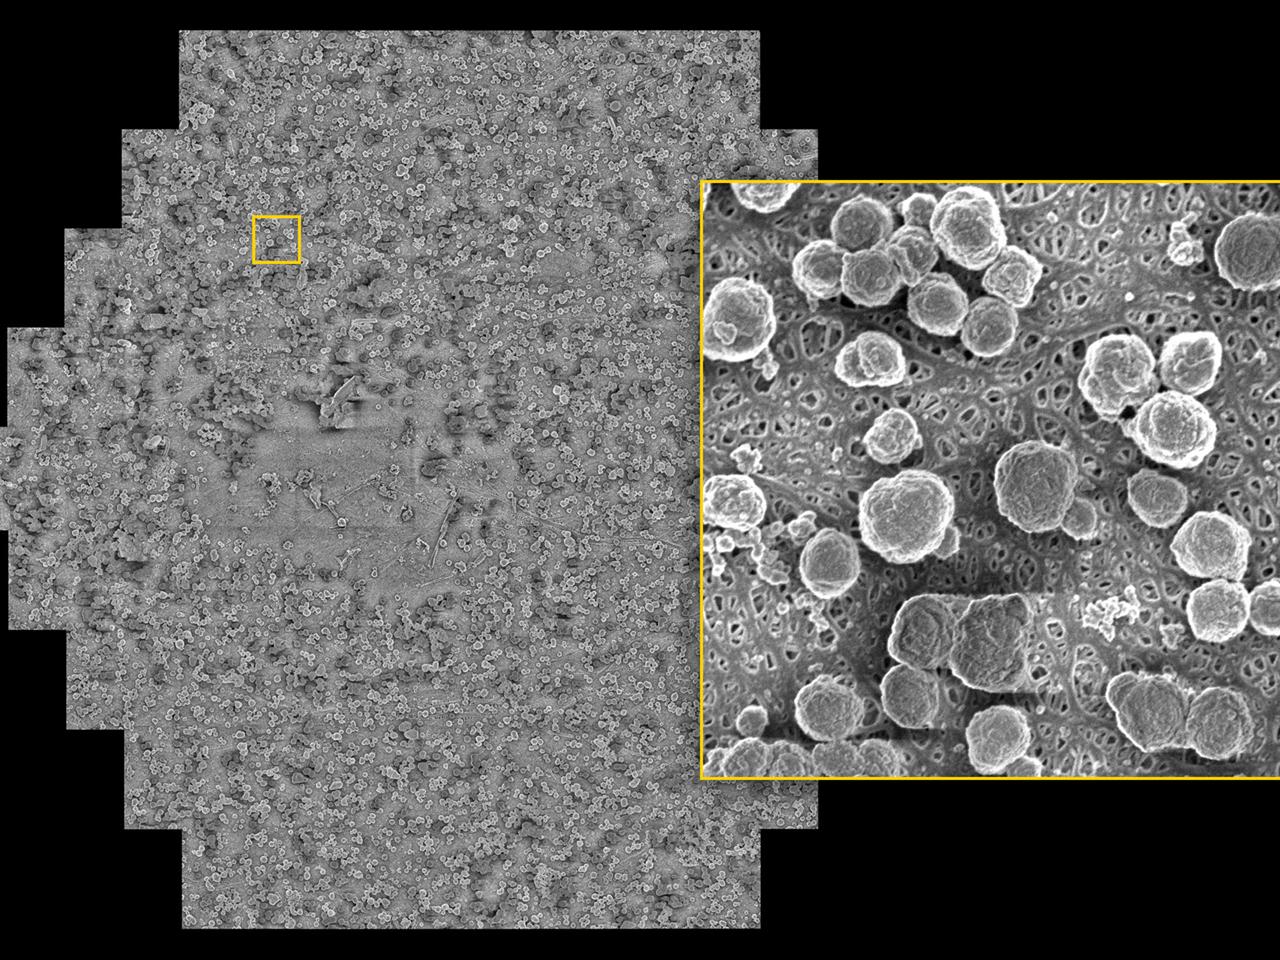 带有来自阳极一侧沉淀物的经多次充放电老化后的电池隔膜箔片。在1 KeV的低着陆能量下获得的图像，像素大小为4 nm，覆盖108 µm × 94 µm的观察视野。